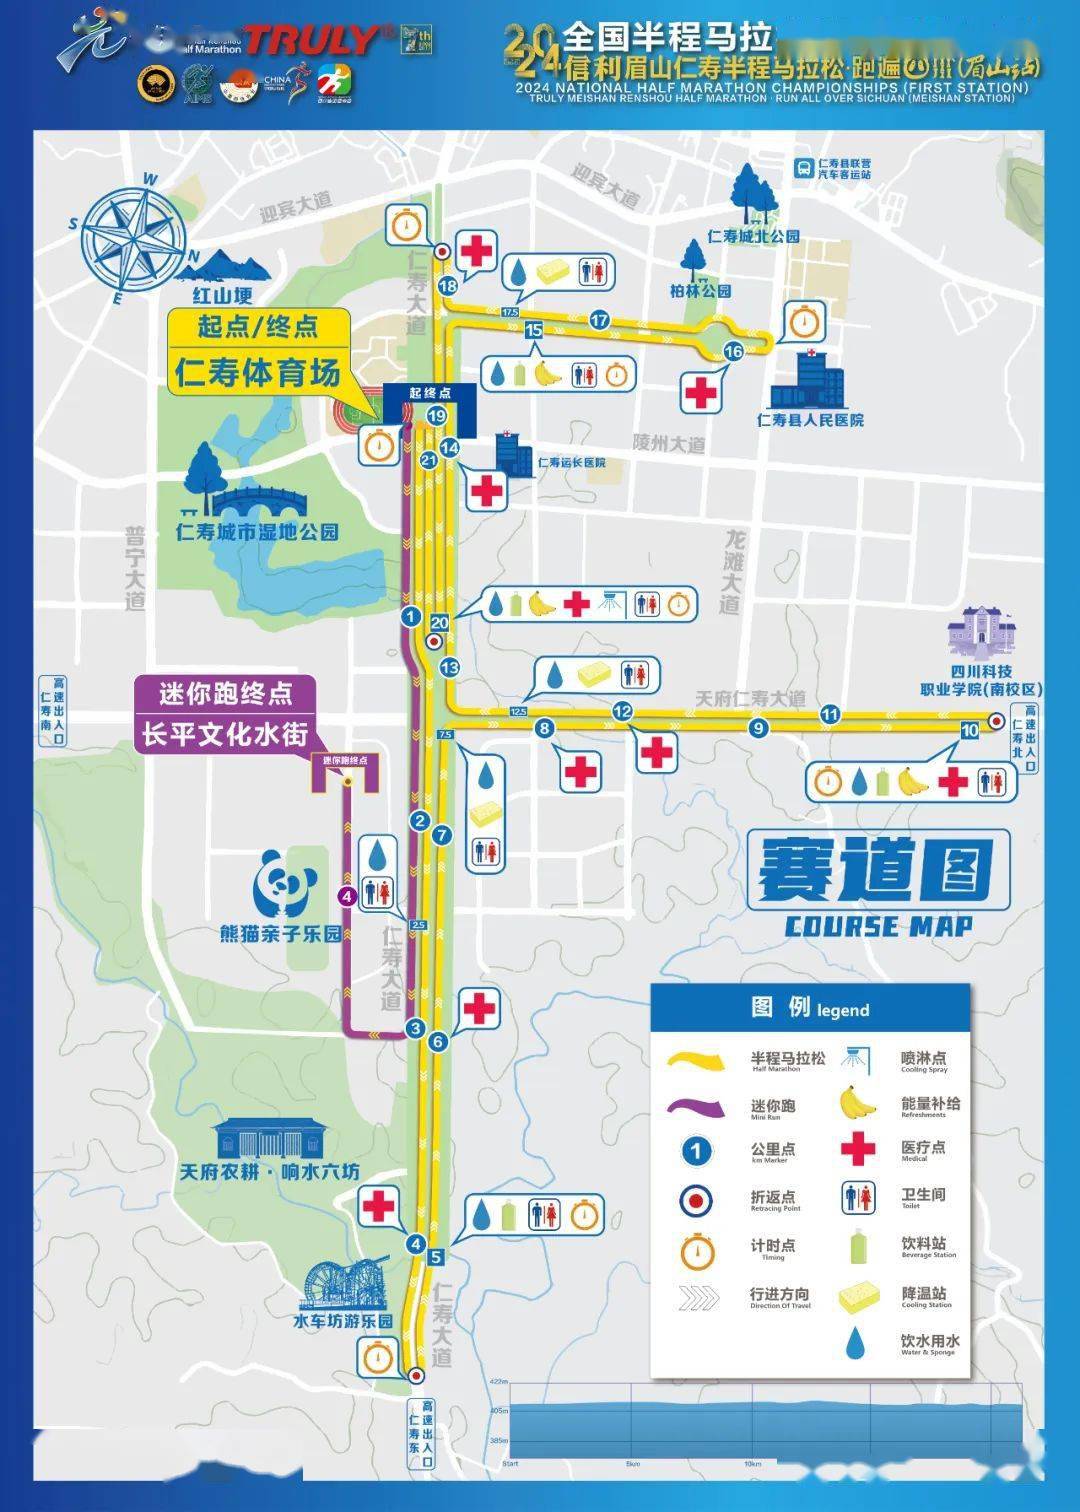 无锡马拉松路线图2021图片